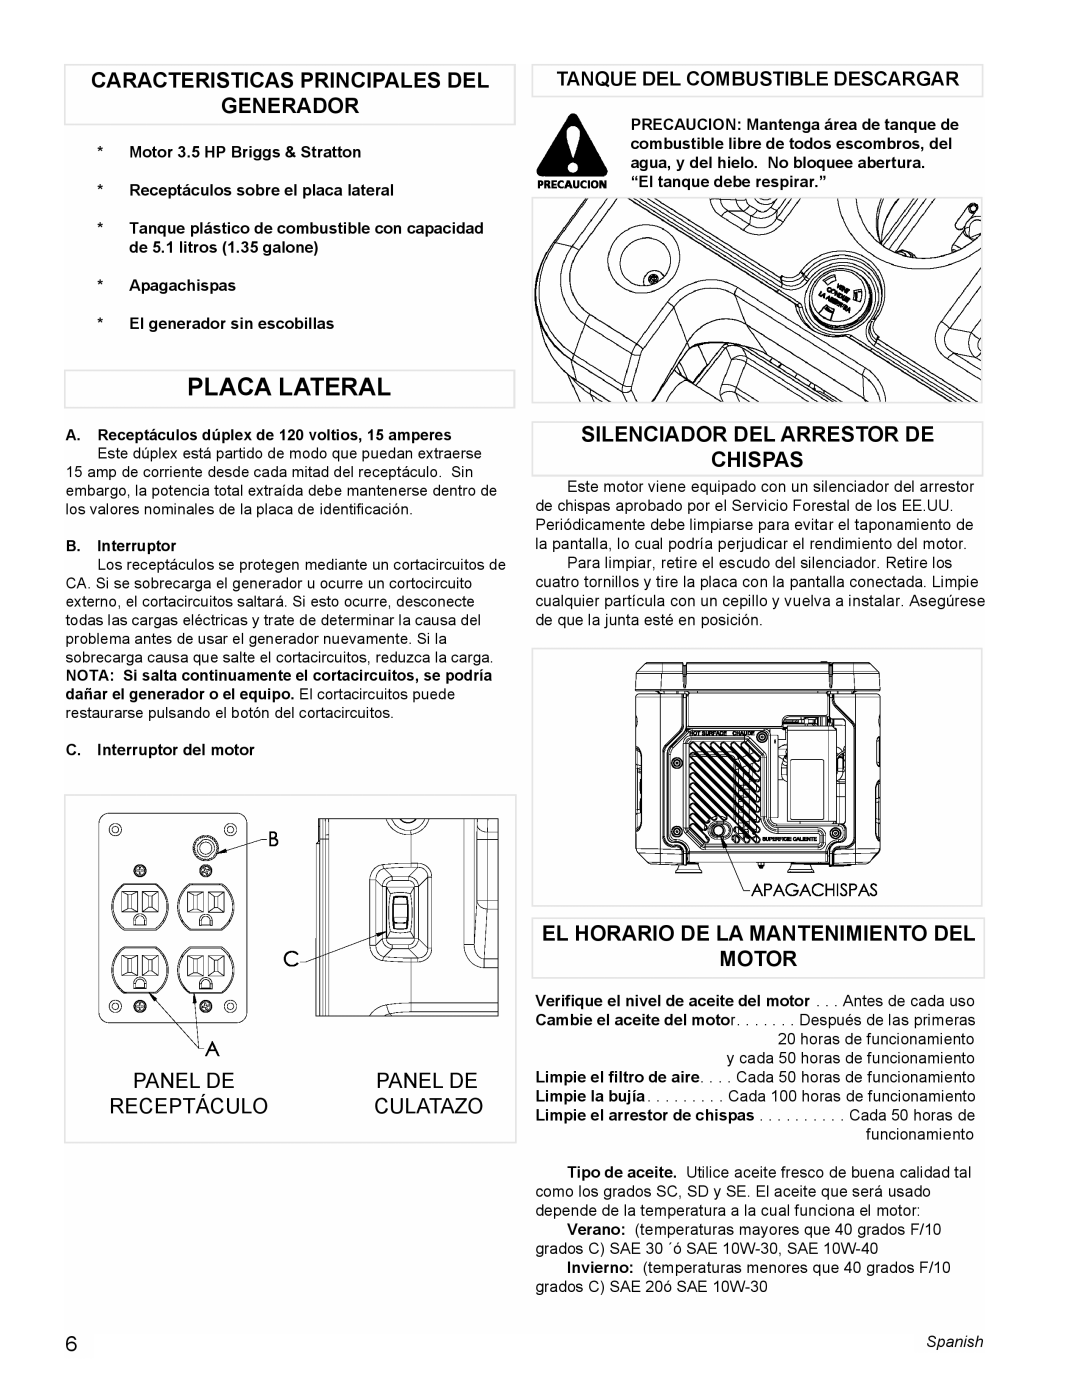 Powermate PM0401857 manual Placa Lateral, Caracteristicas Principales Del Generador, Silenciador Del Arrestor De Chispas 